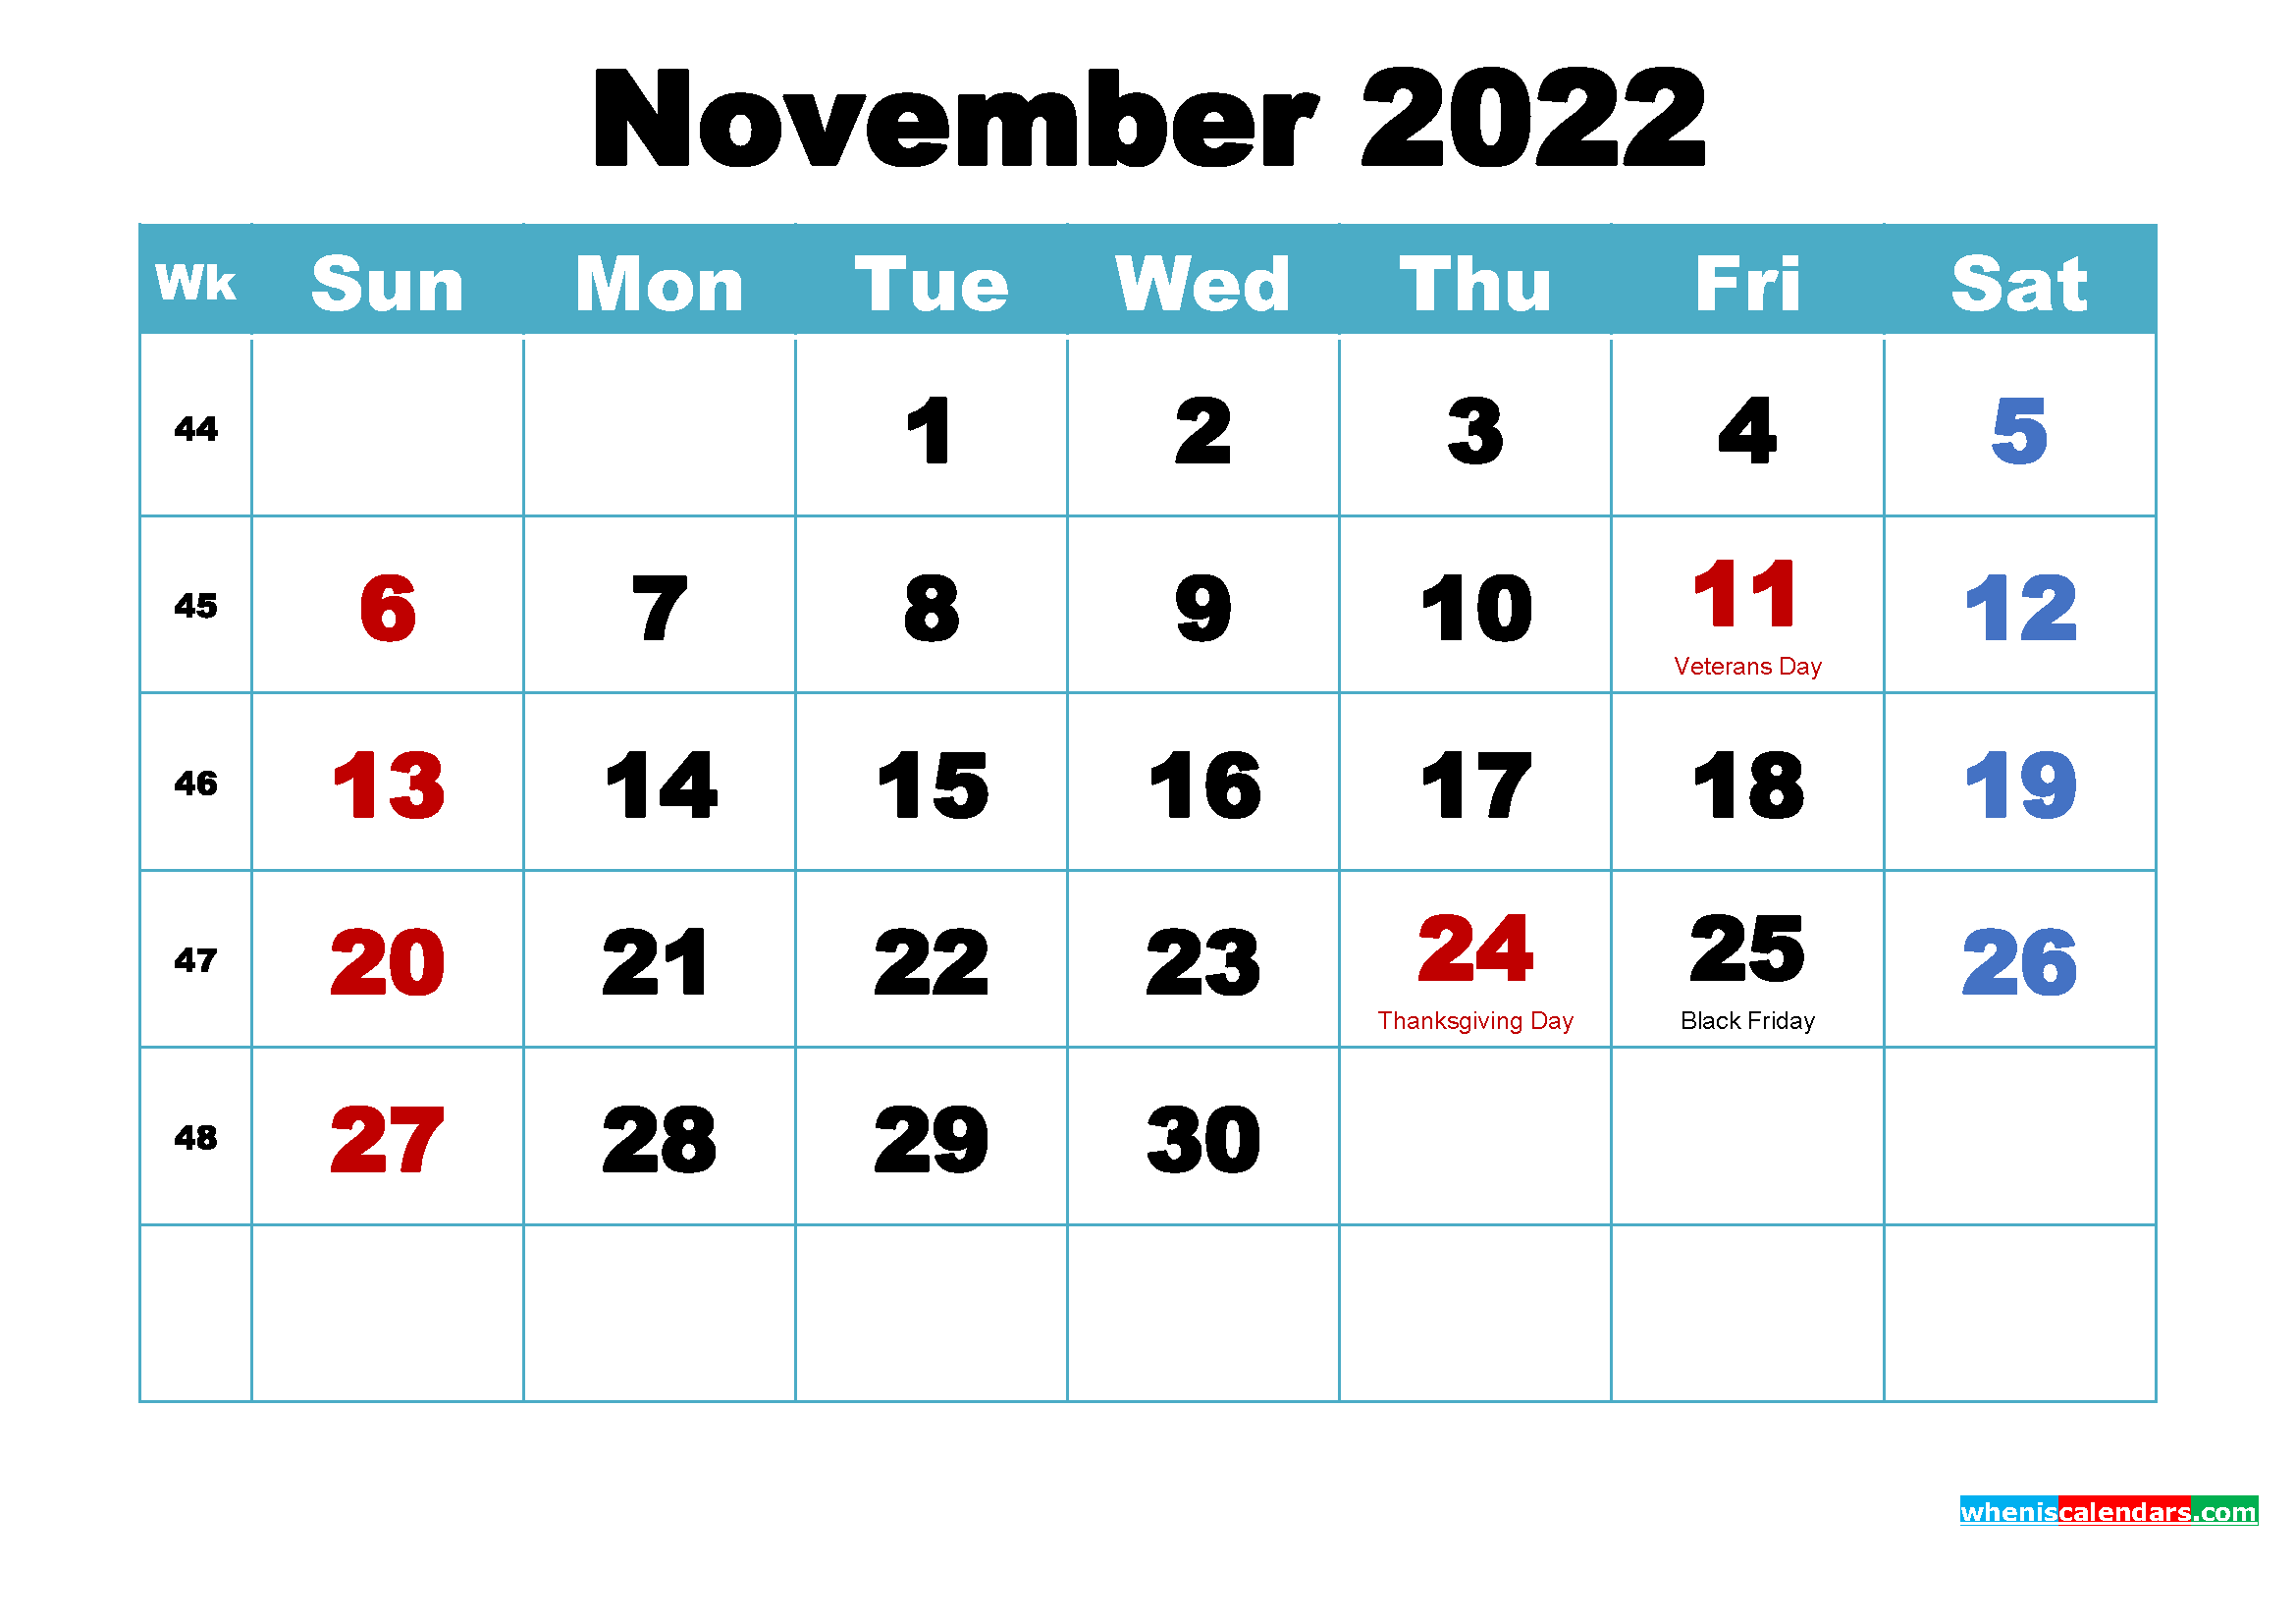 November 2022 Calendar Wallpaper Download 2339x1654